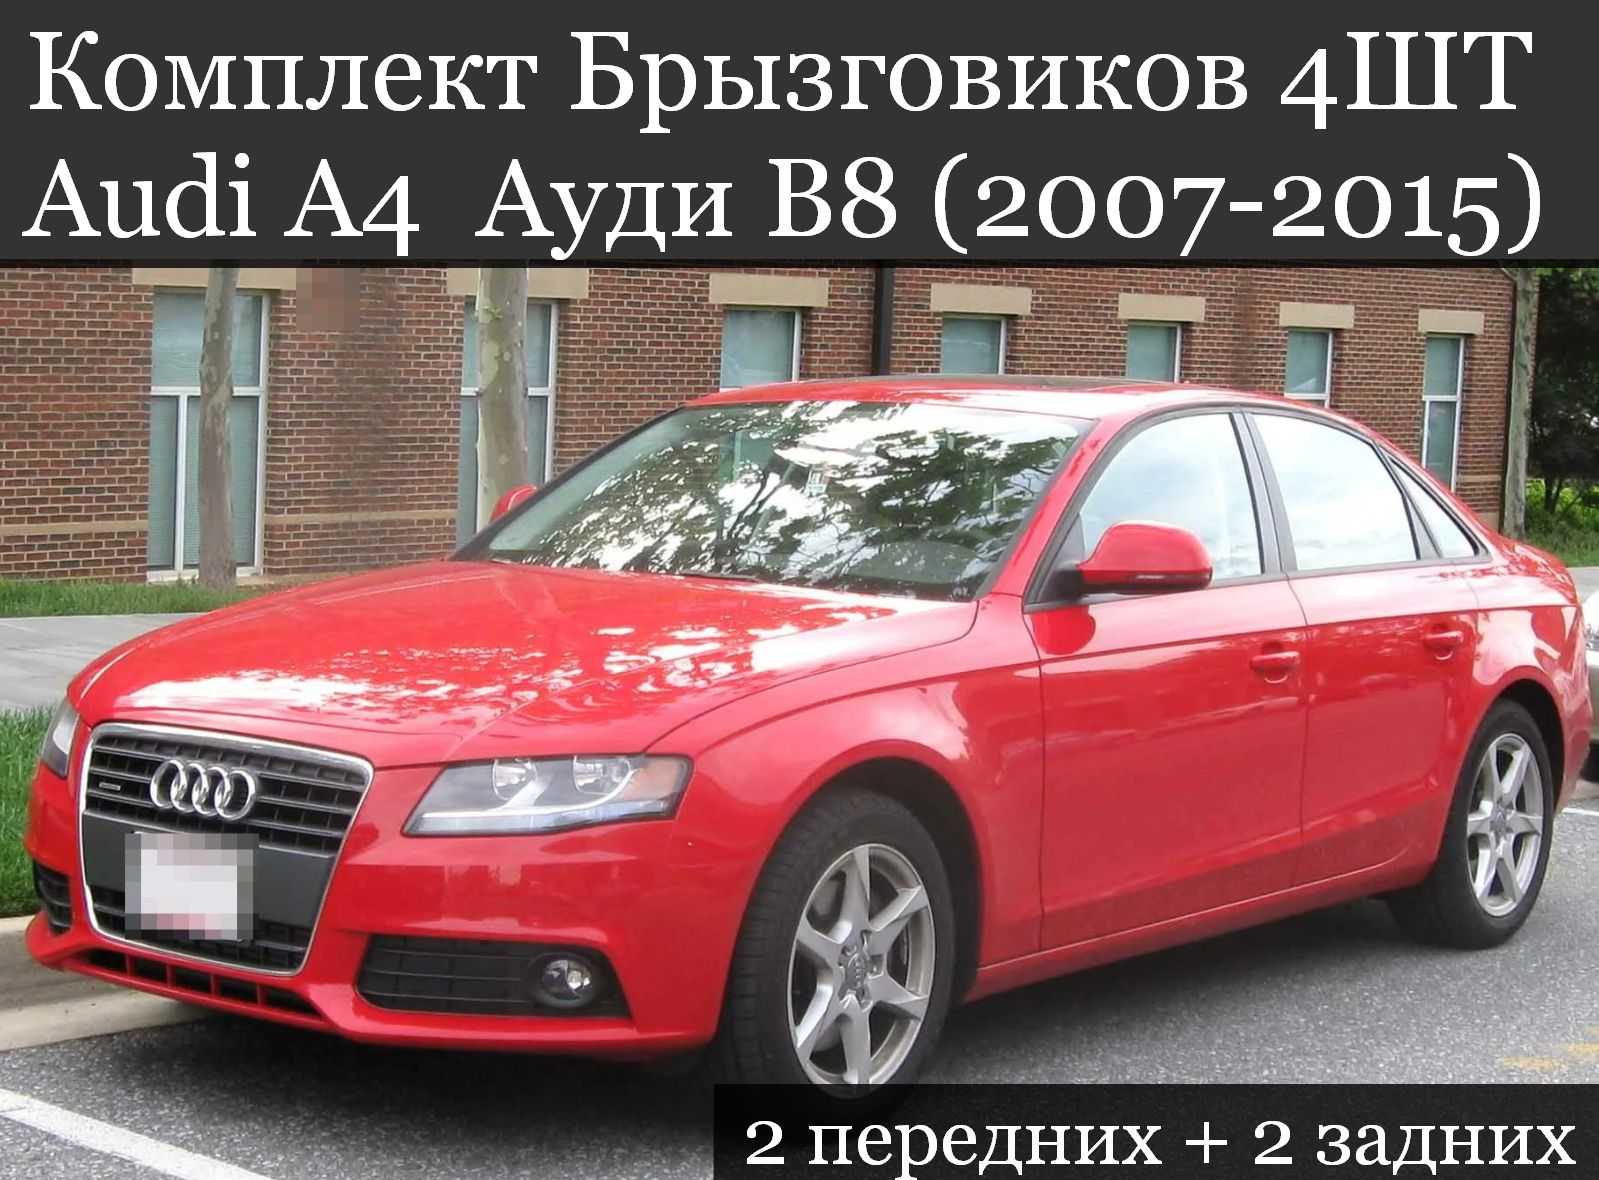 Комплект Брызговиков Вцветавто Audi A4 B8 2007-2015 4 штуки